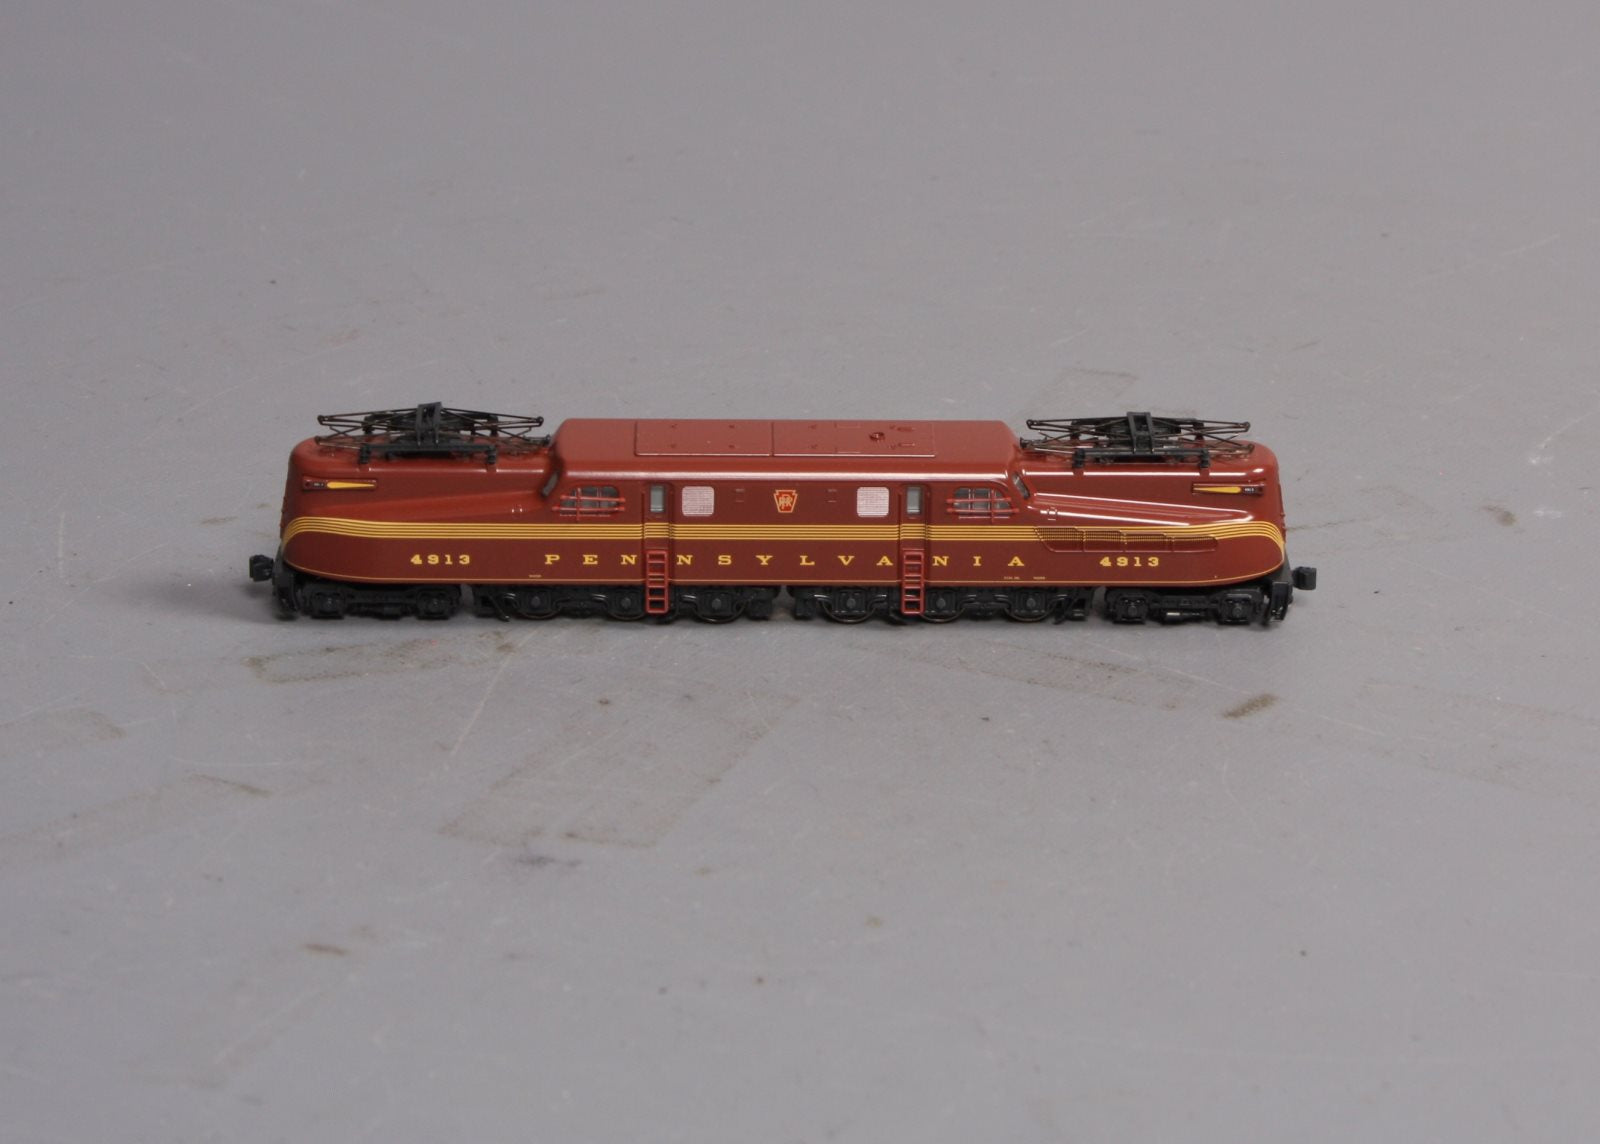 【配送】未使用　KATO 137-2001 GG1 Pennsylvania 4935 鉄道模型